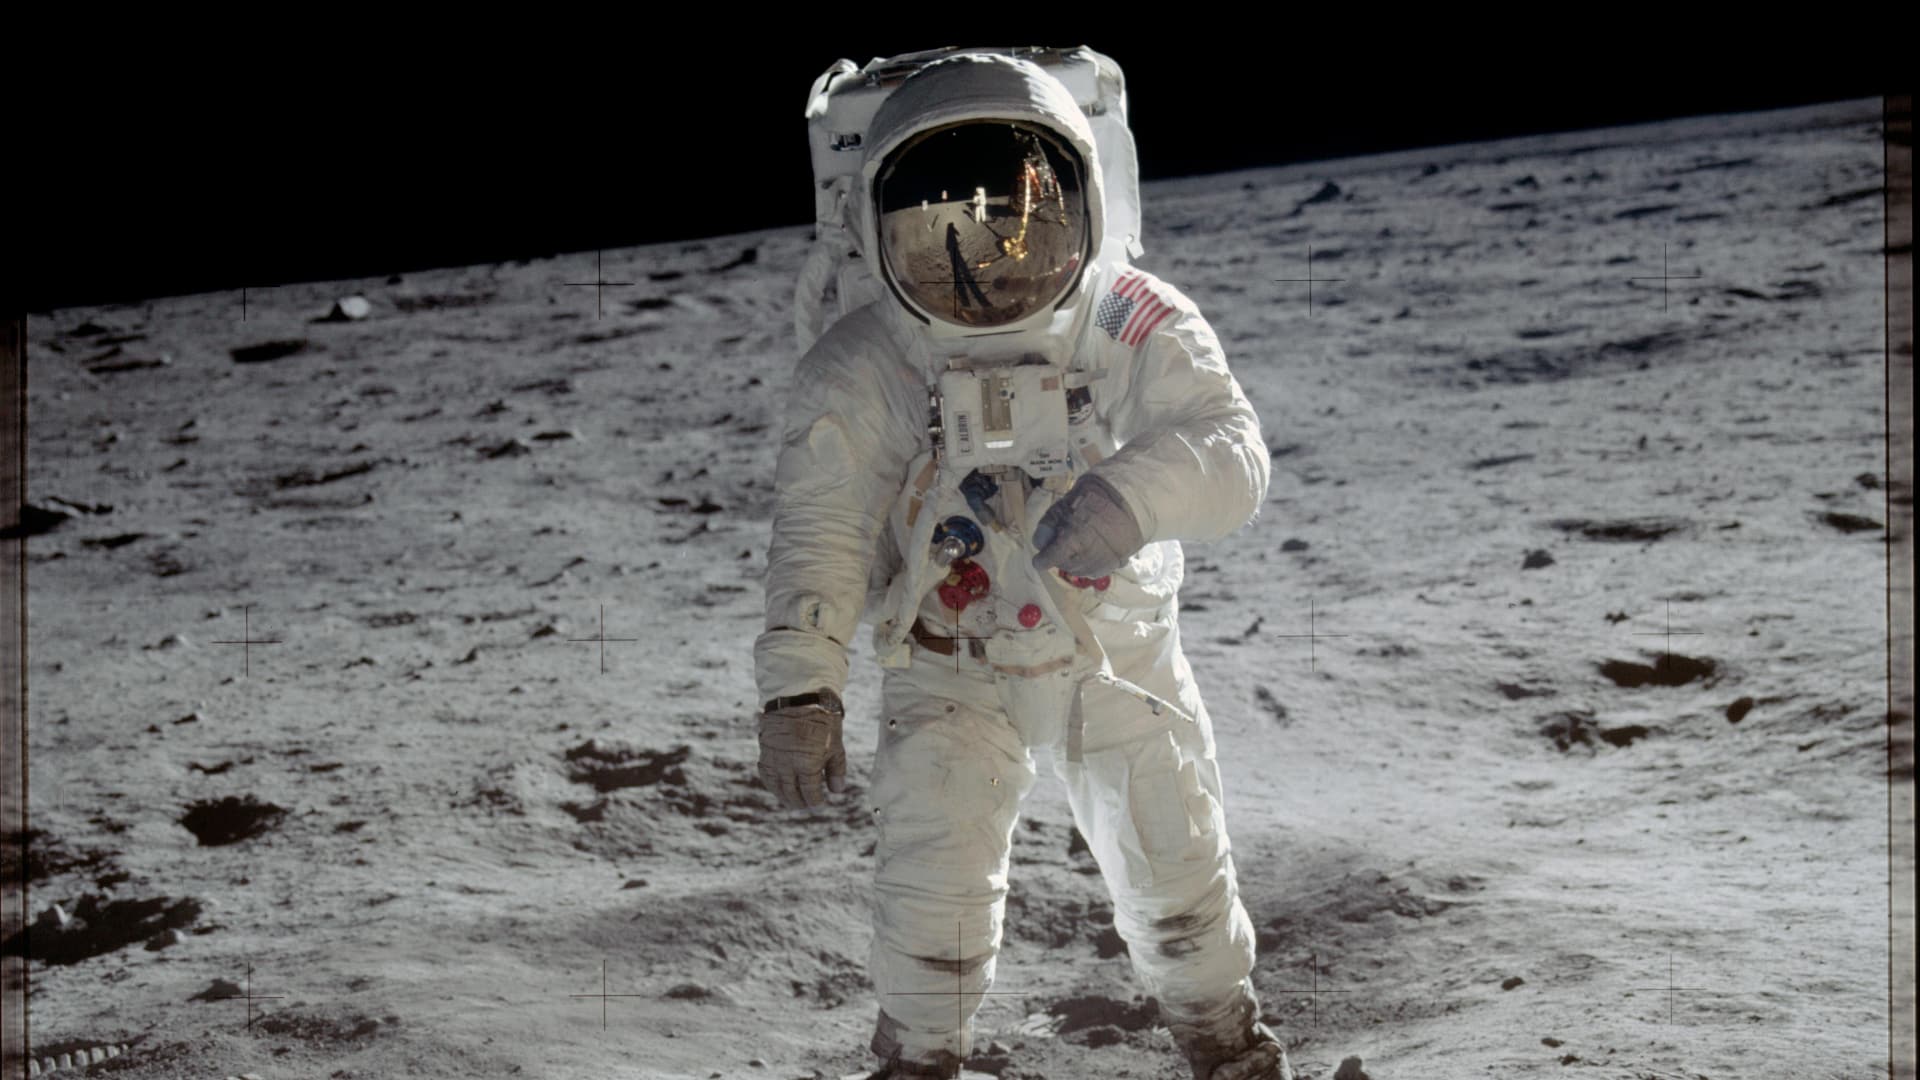 Buzz Aldrin during the Apollo 11 mission. Pic: NASA